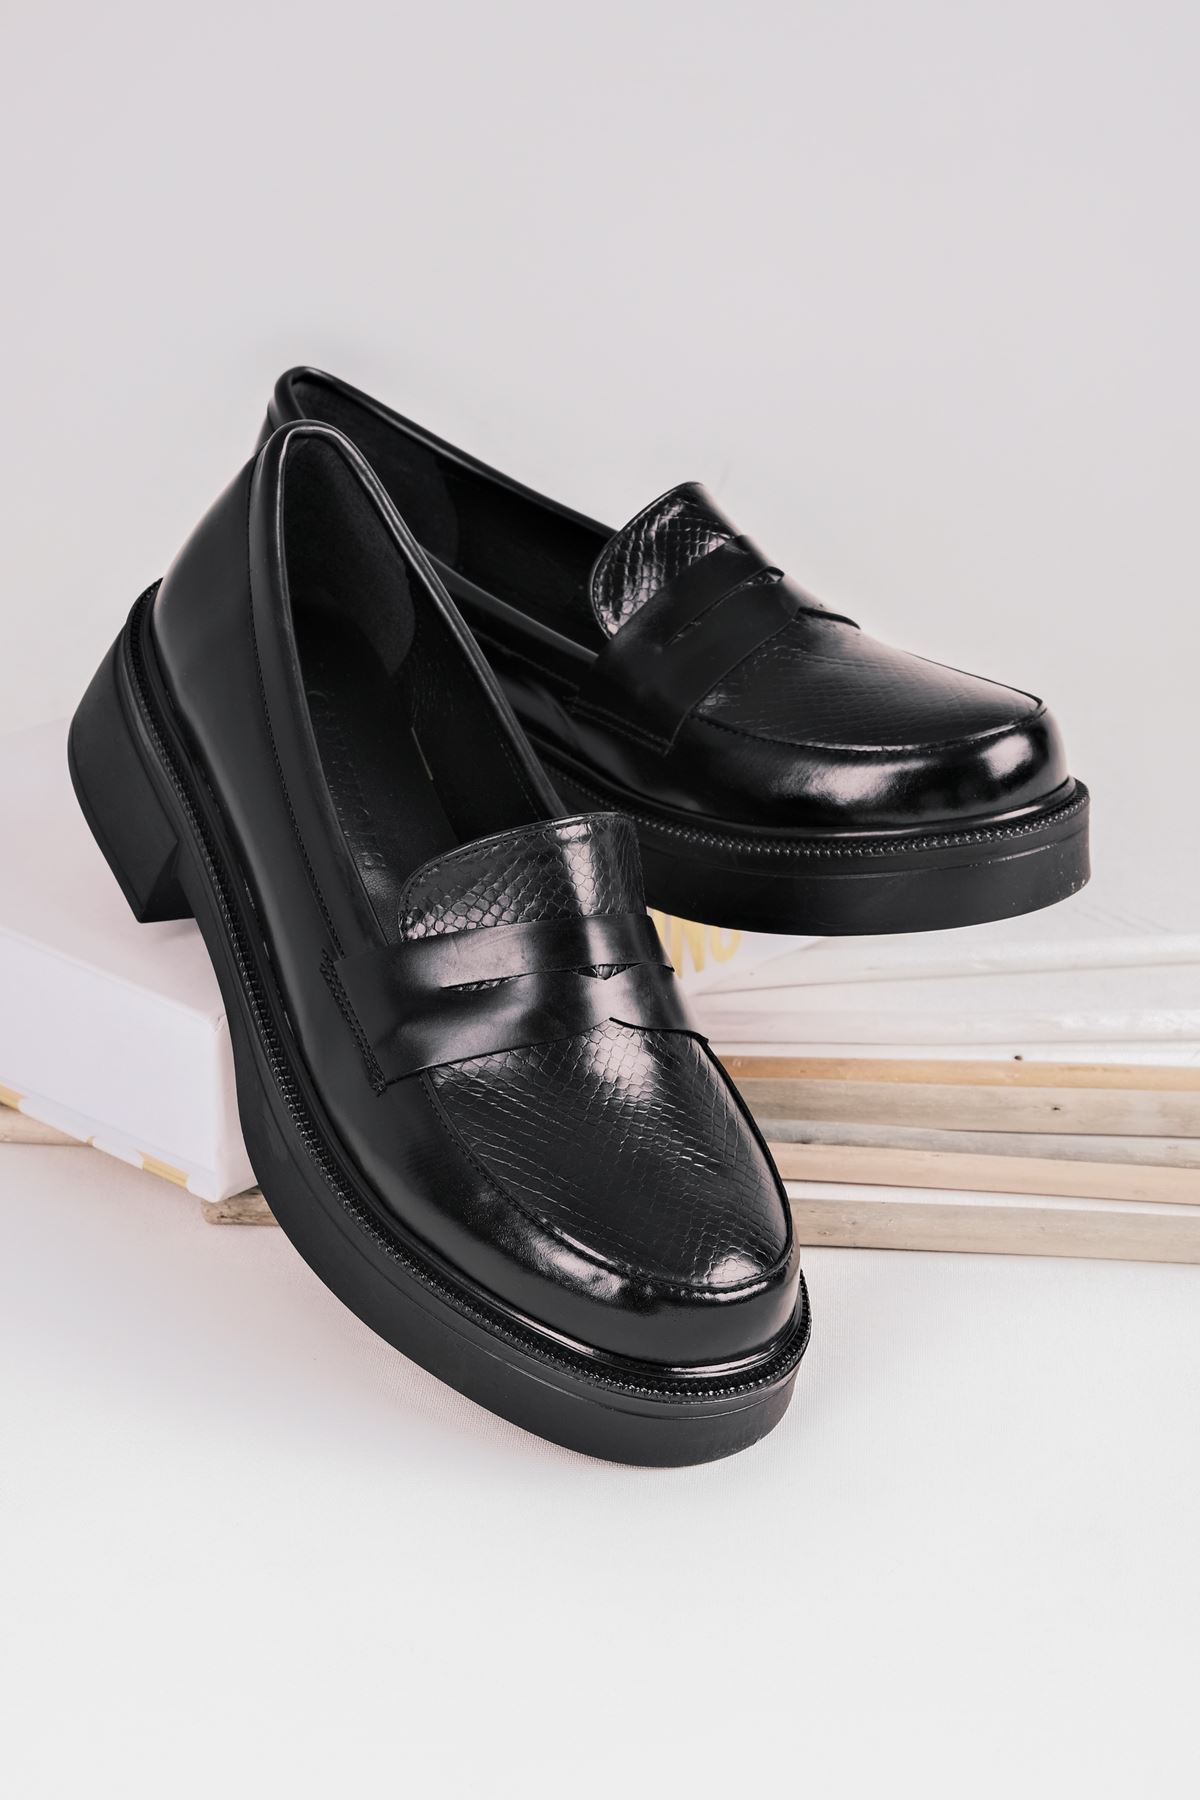 Abelia Kadın Oxford ayakkabı Kroko Desenli-siyah